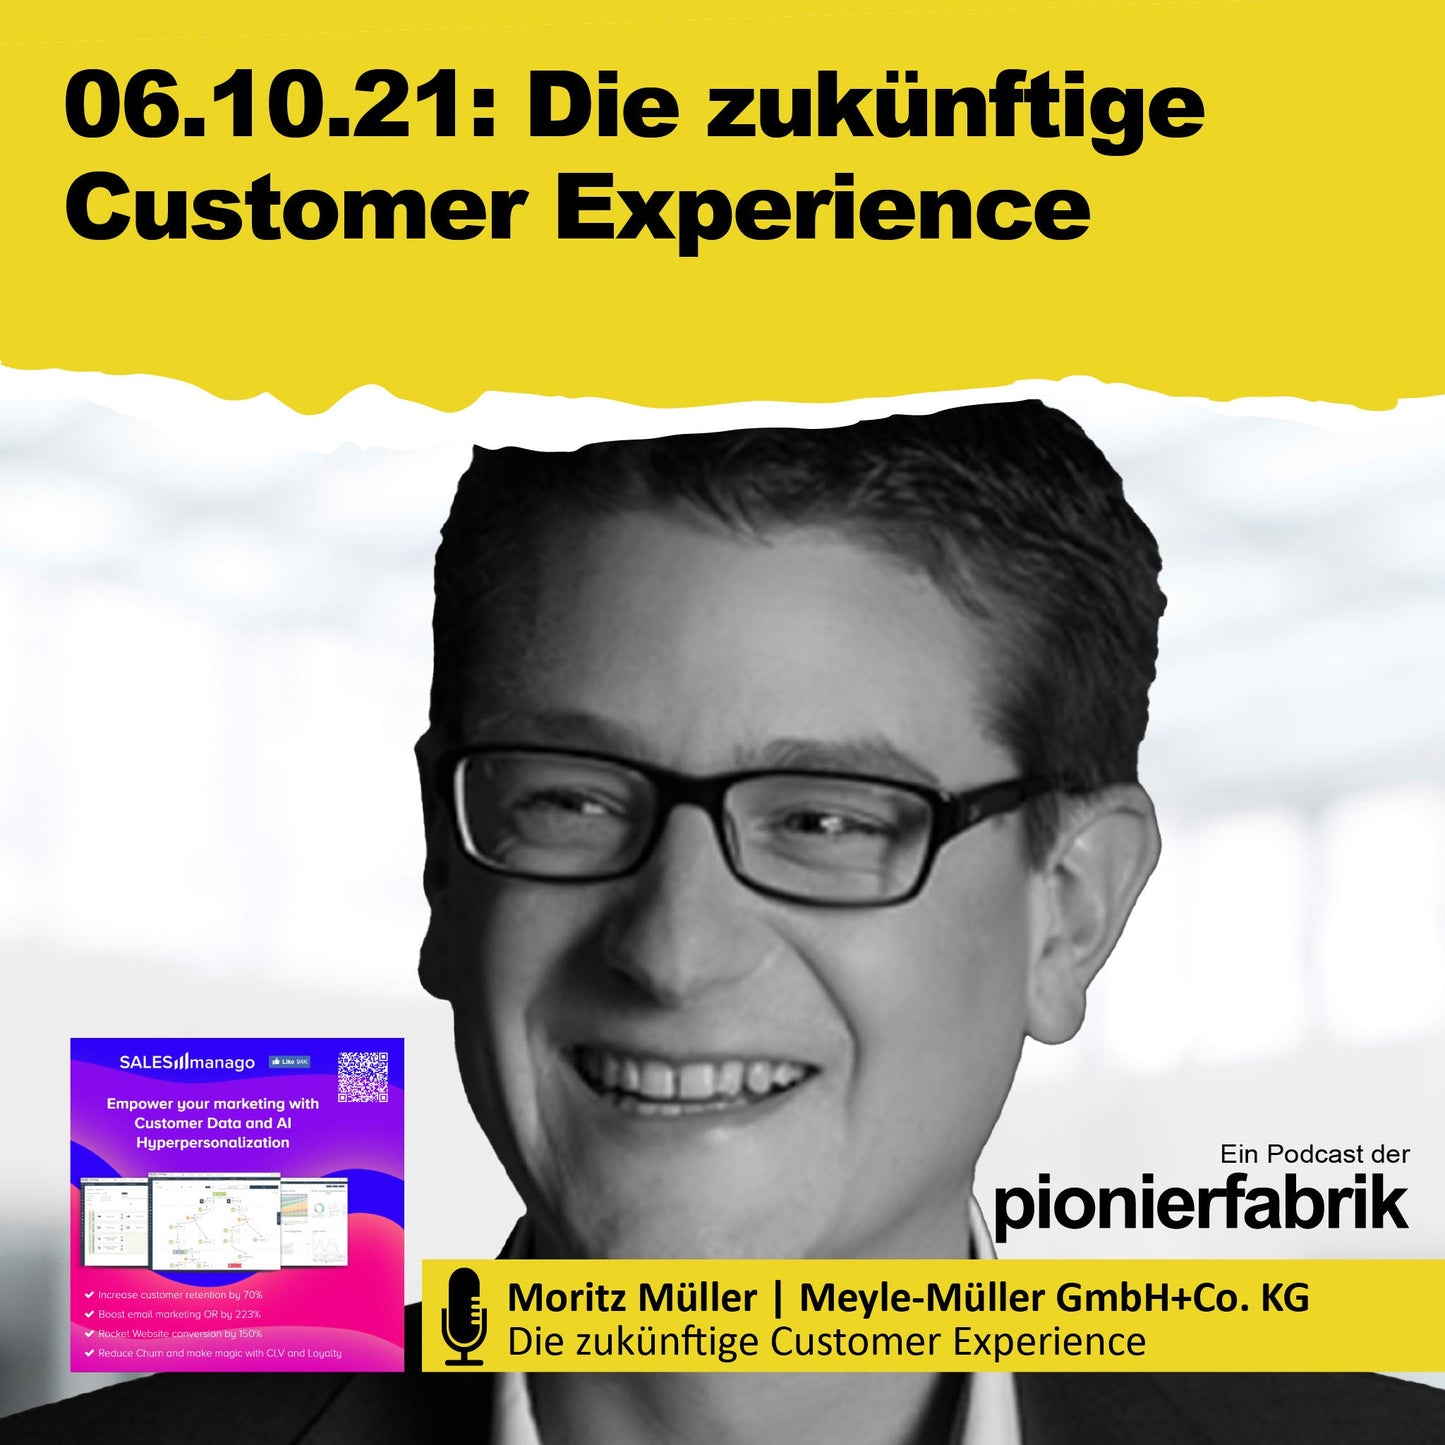 06.10.2021 "Die zukünftige Customer Experience" mit Moritz Müller | Meyle-Müller GmbH+Co. KG